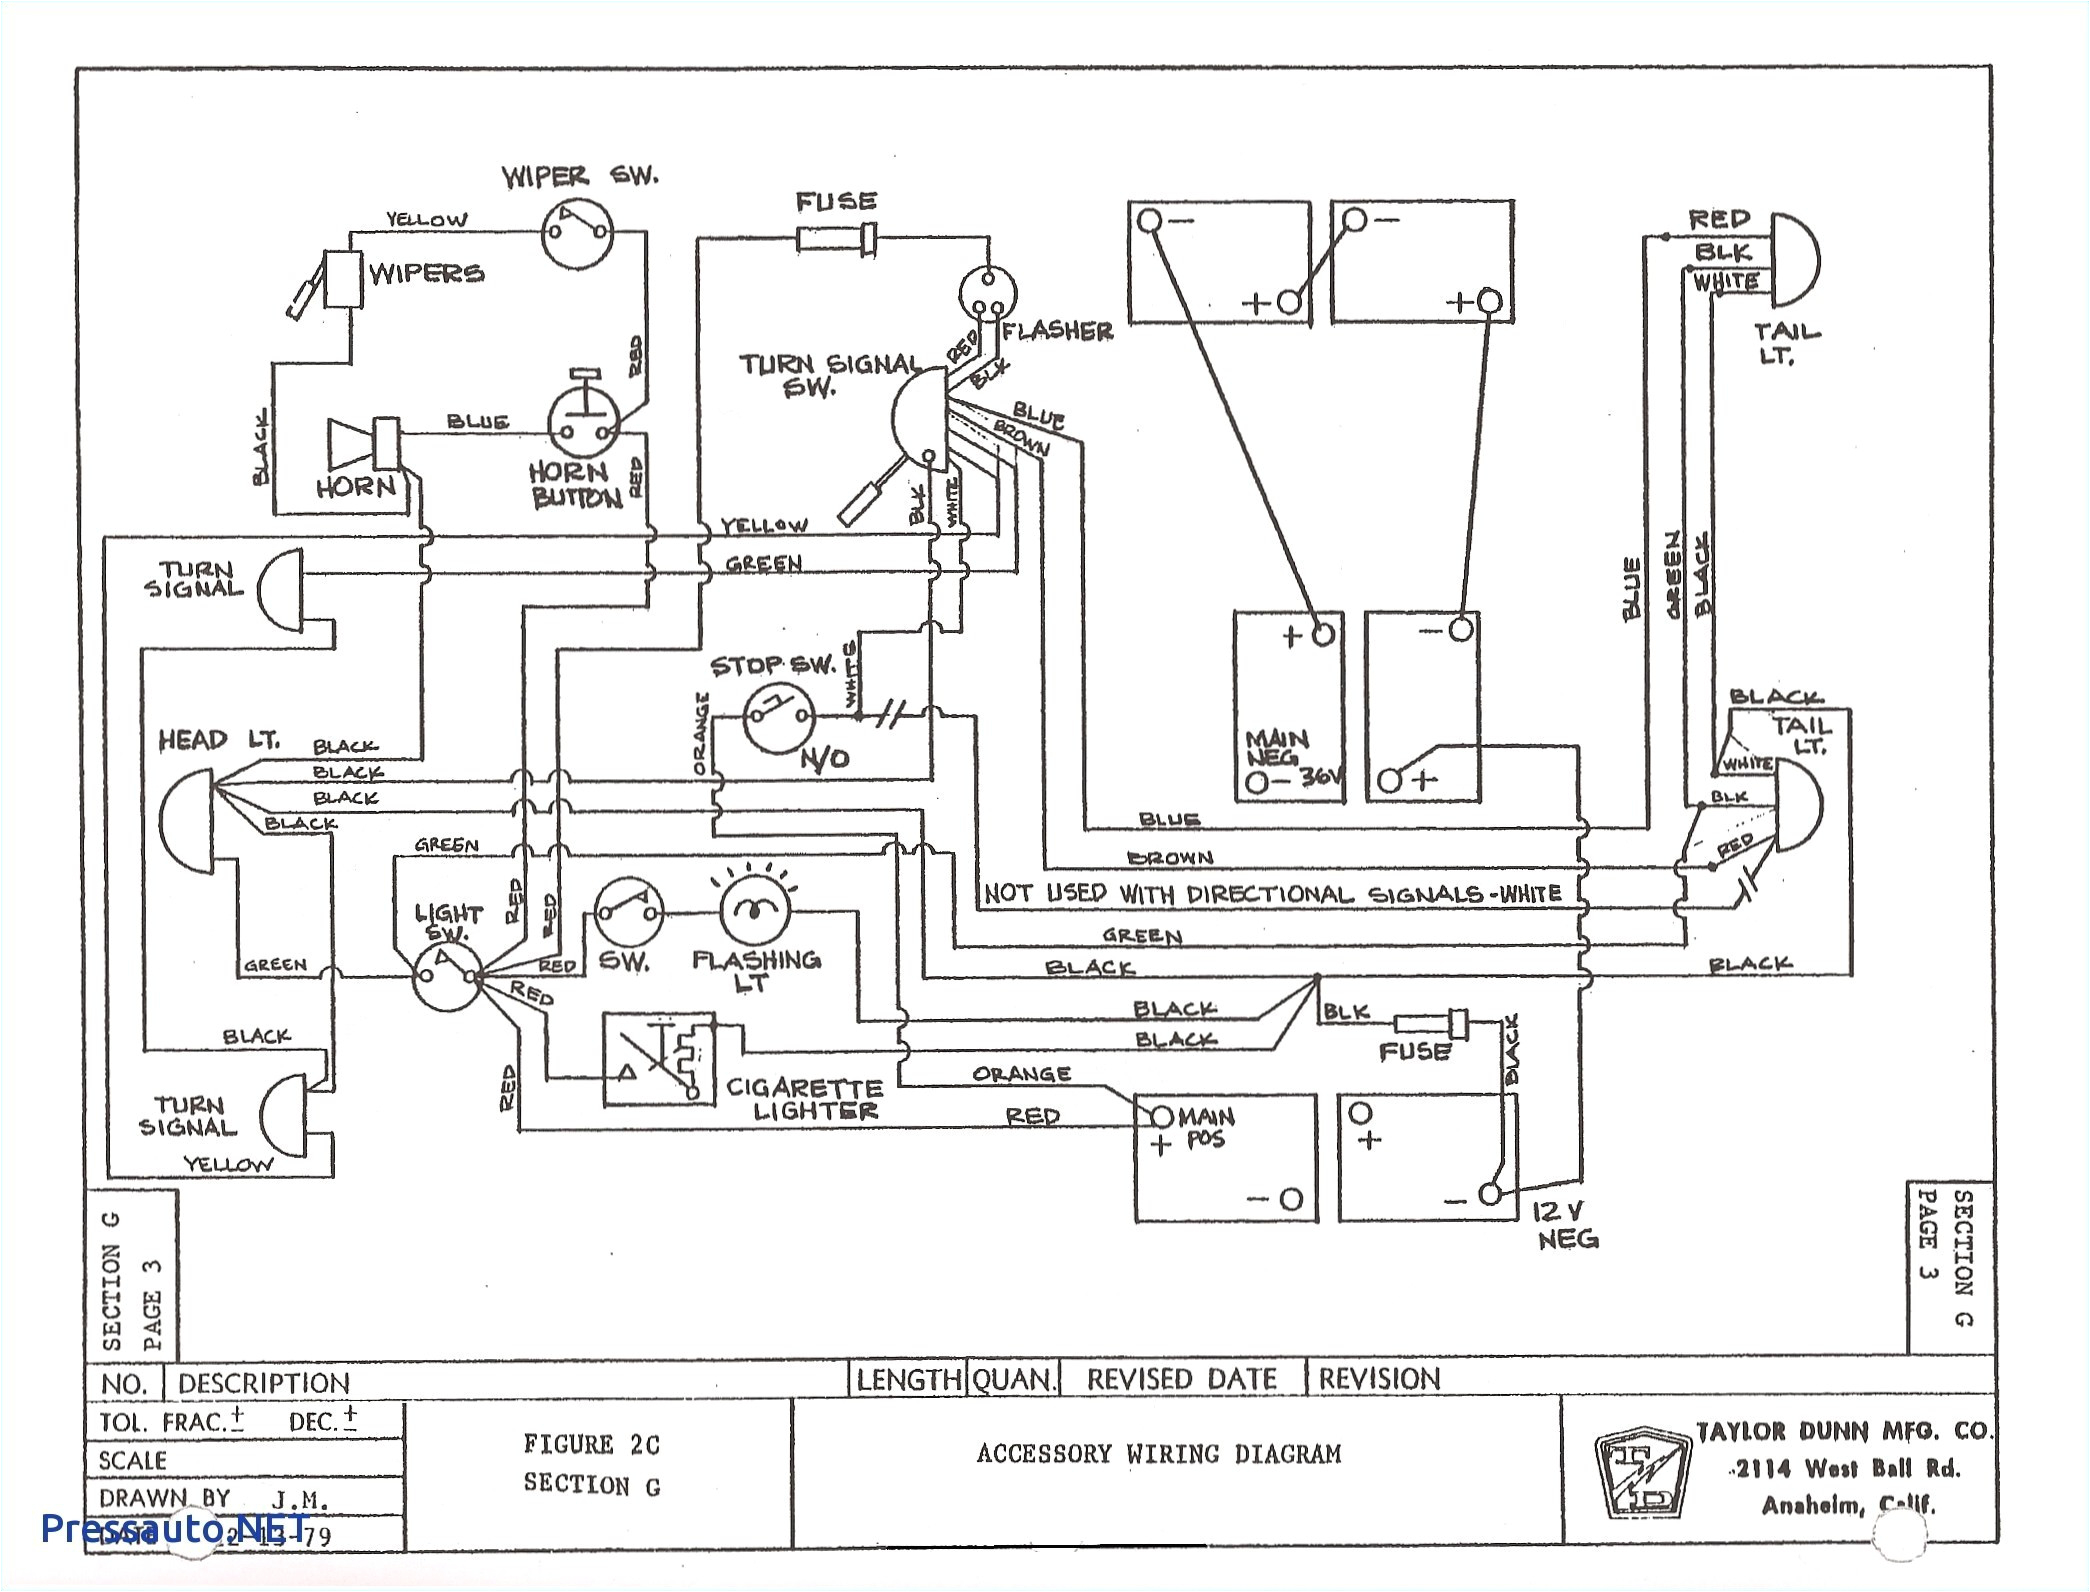 2008 ez go wiring diagram wiring diagram post 2008 48 volt ezgo wiring diagram wiring diagram